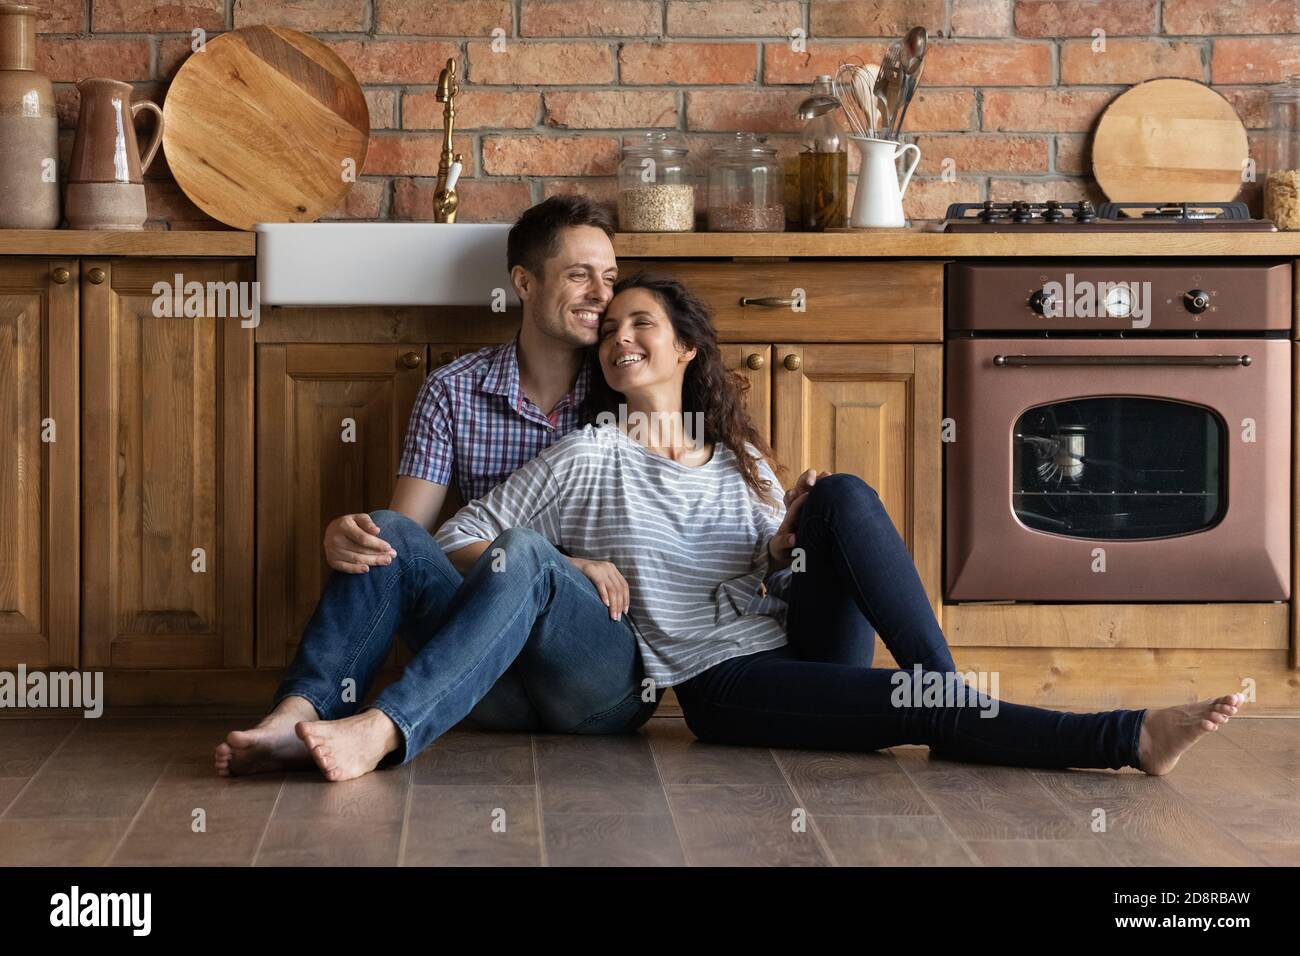 Una coppia sorridente si rilassa nell'accogliente cucina casalinga Foto Stock